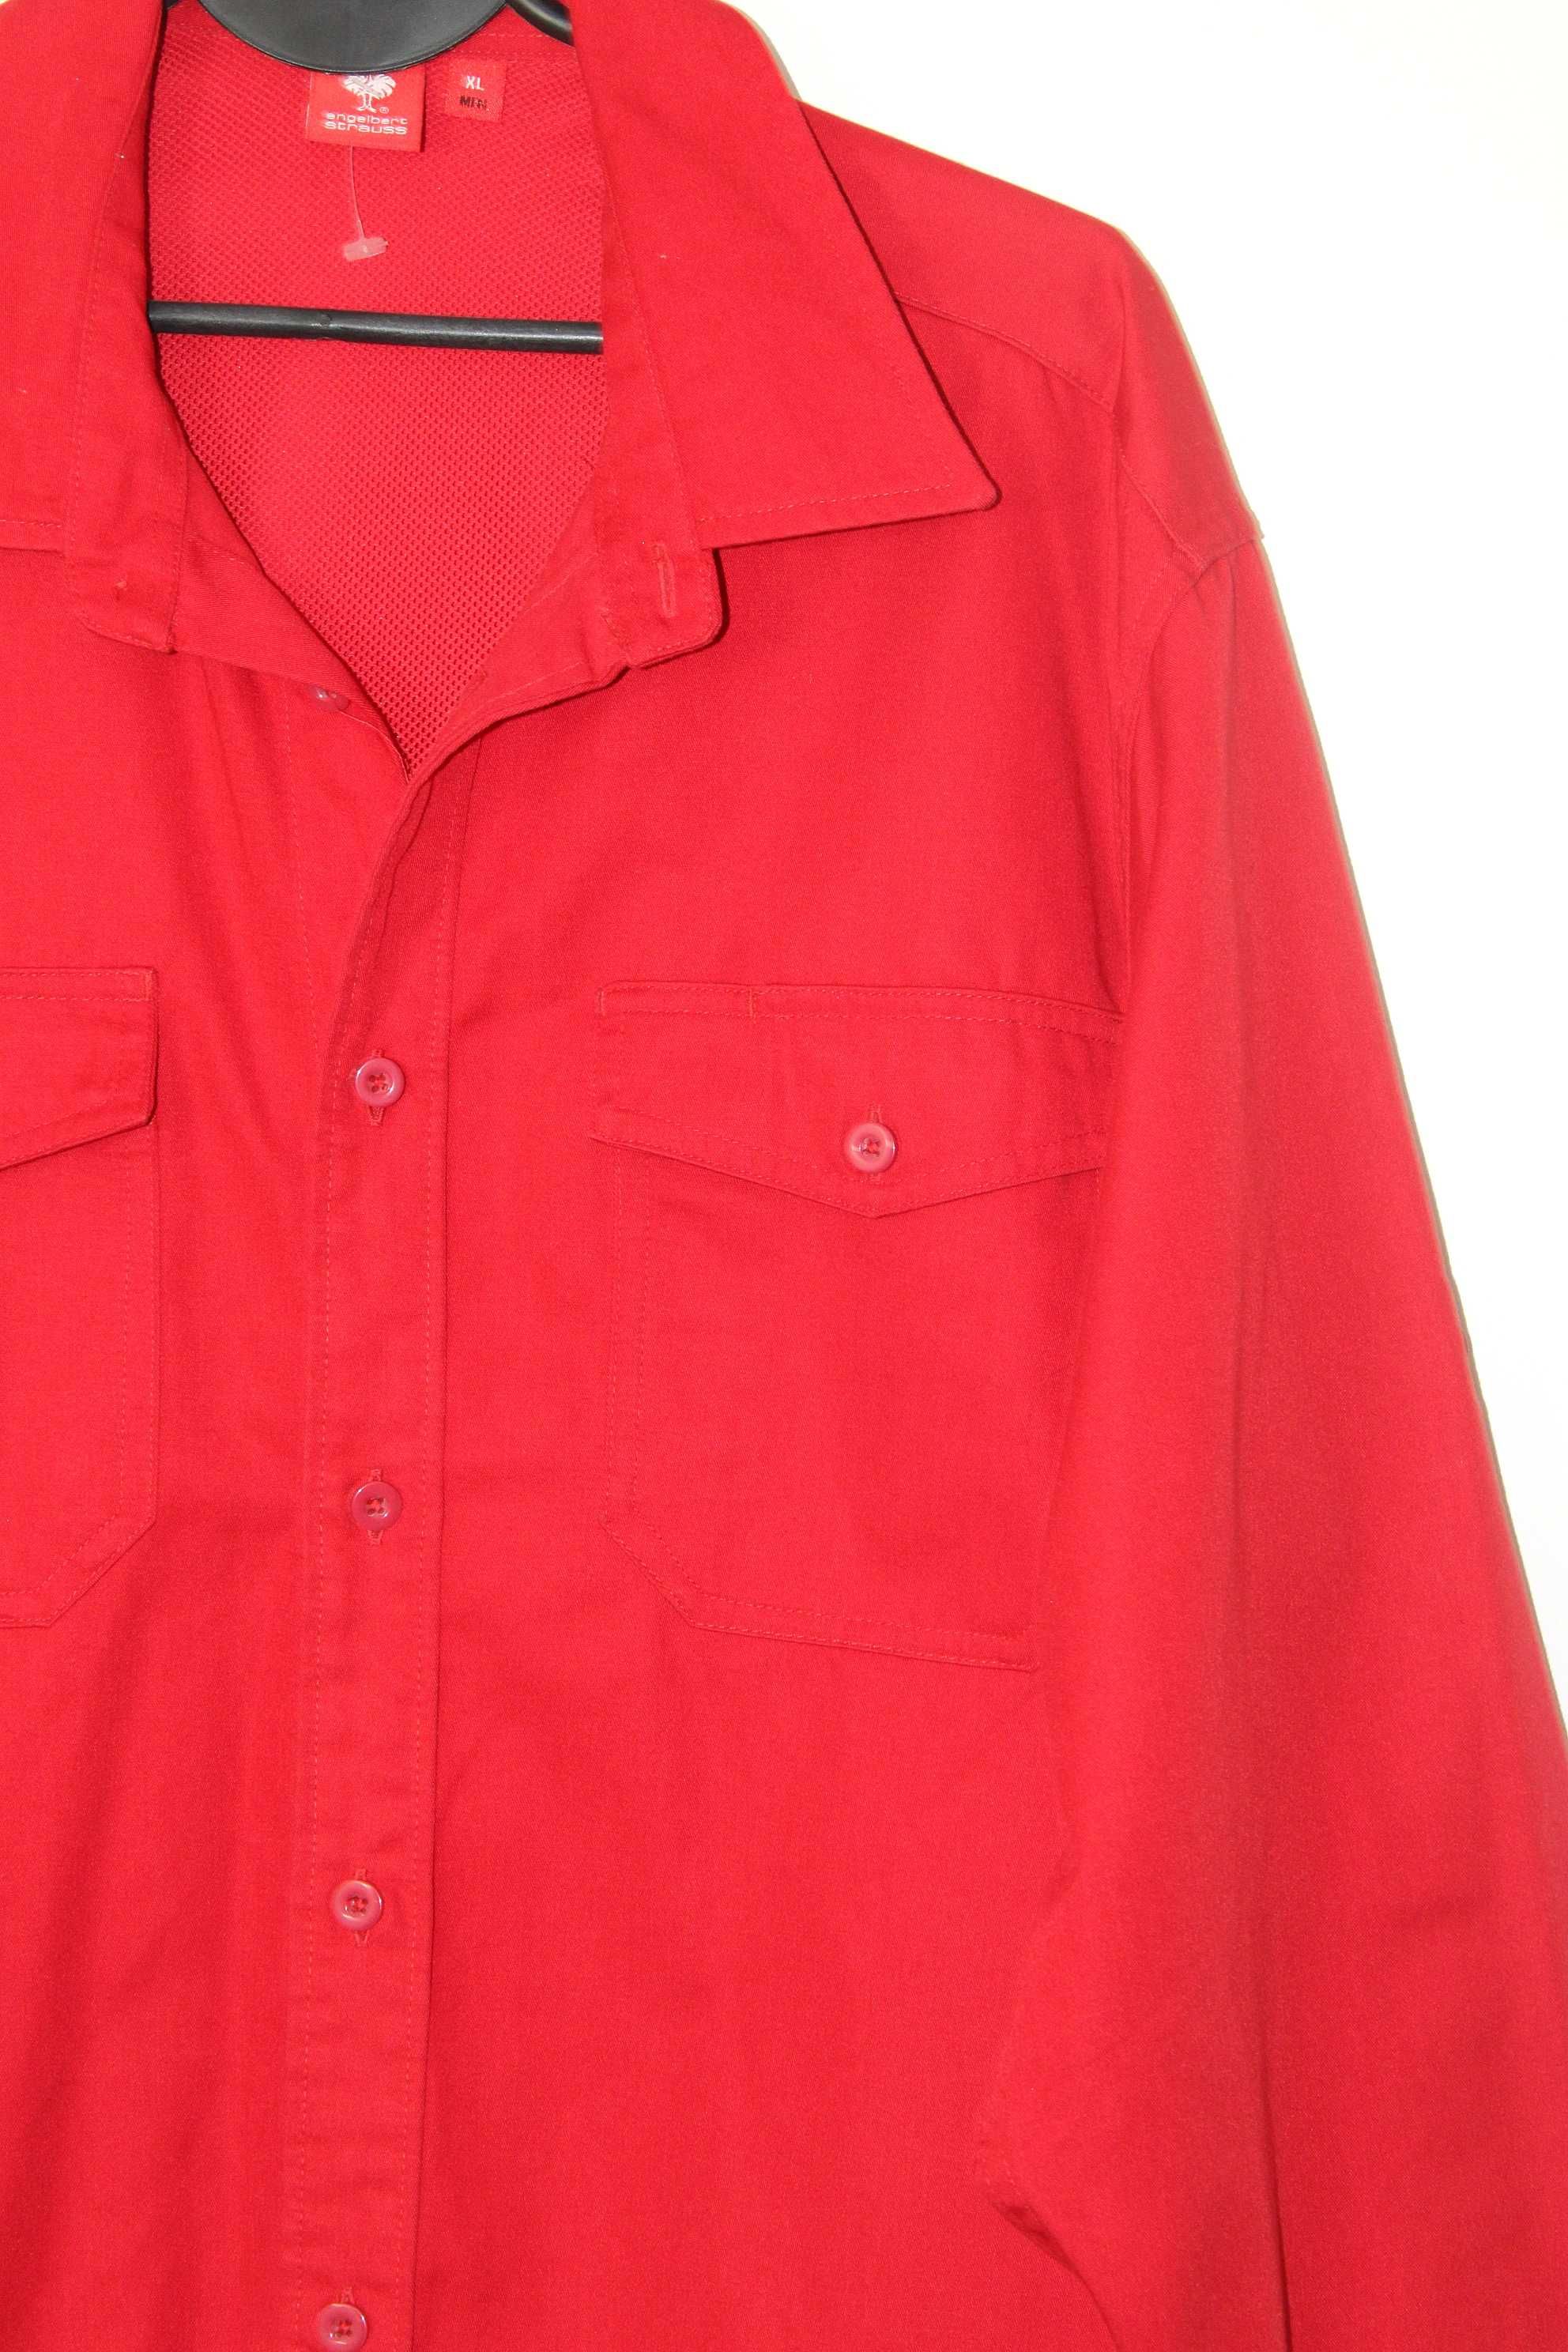 z6 ENGELBERT STRAUSS Stylowa Męska Czerwona Koszula XL